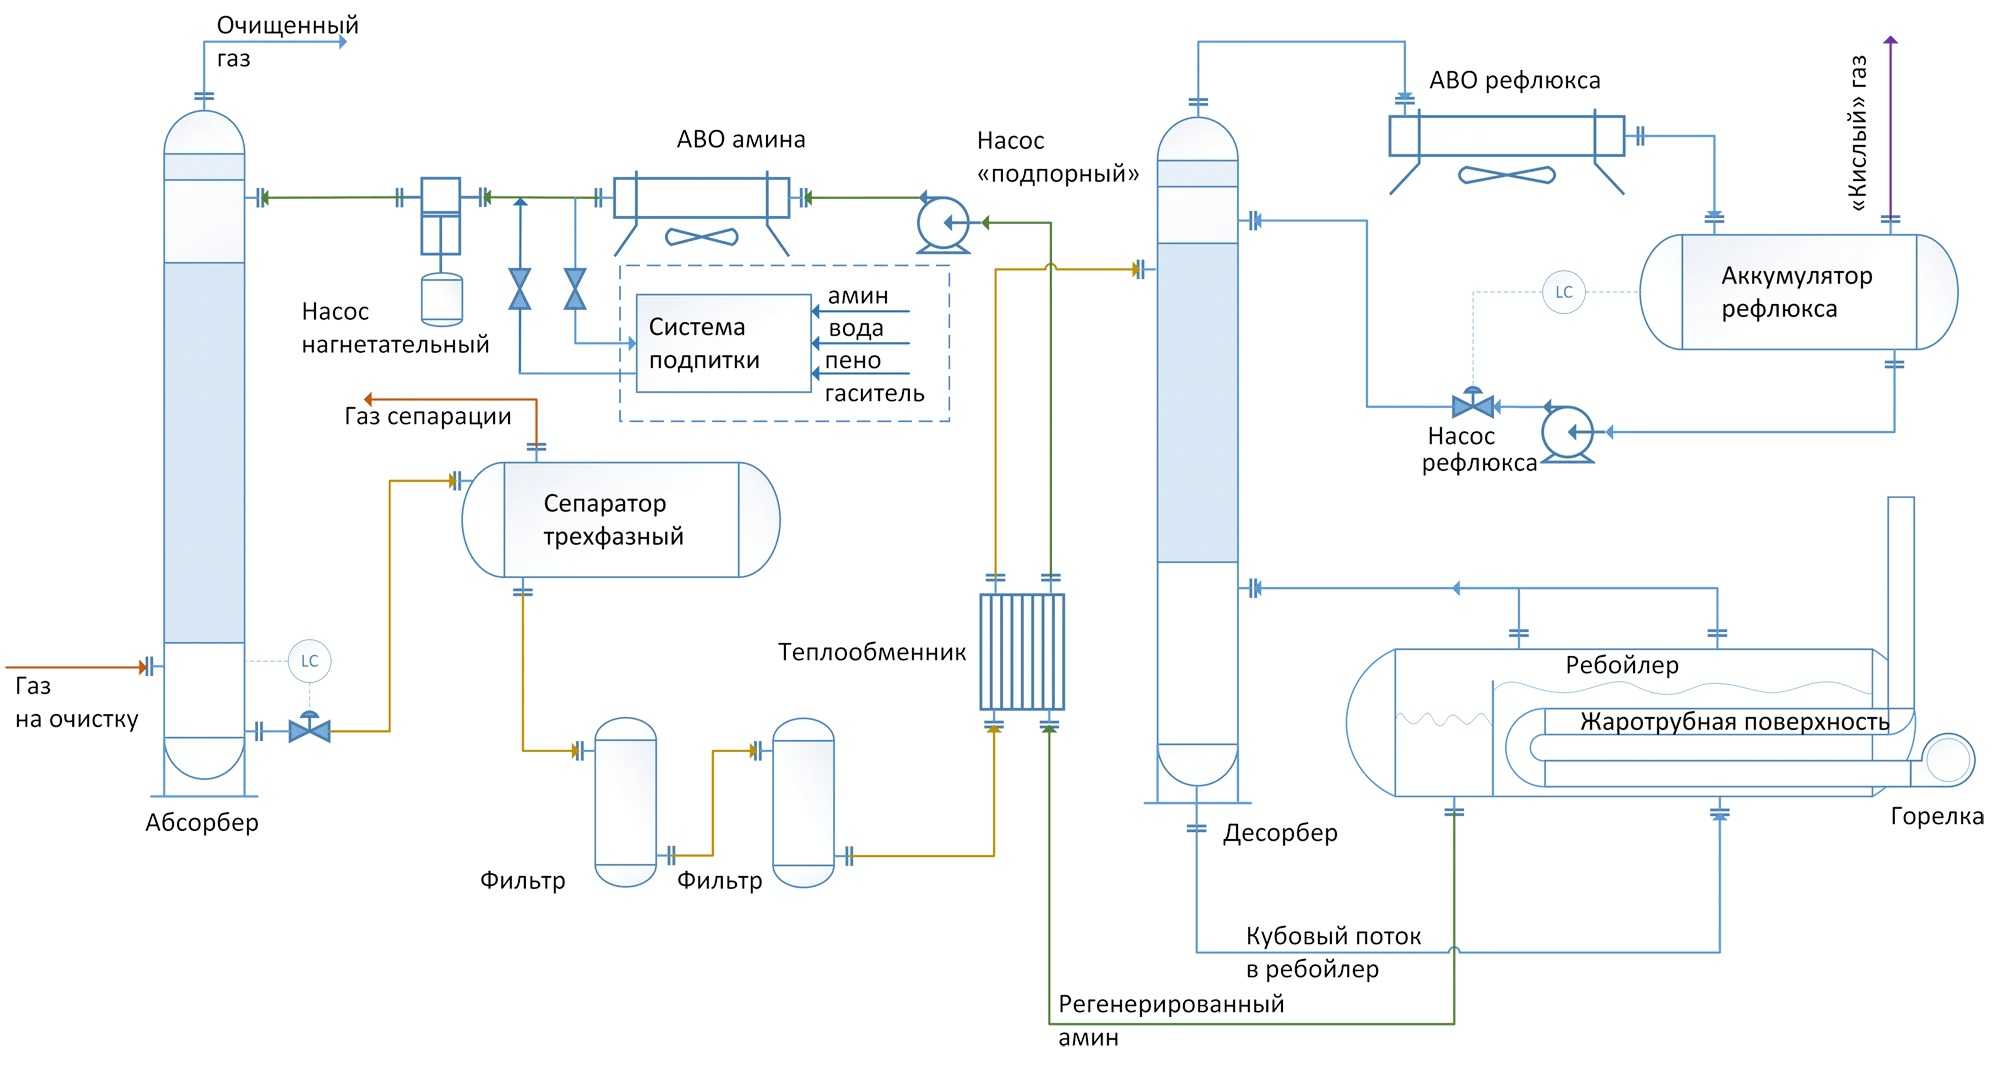 Технологическая схема Аминовой очистки газа